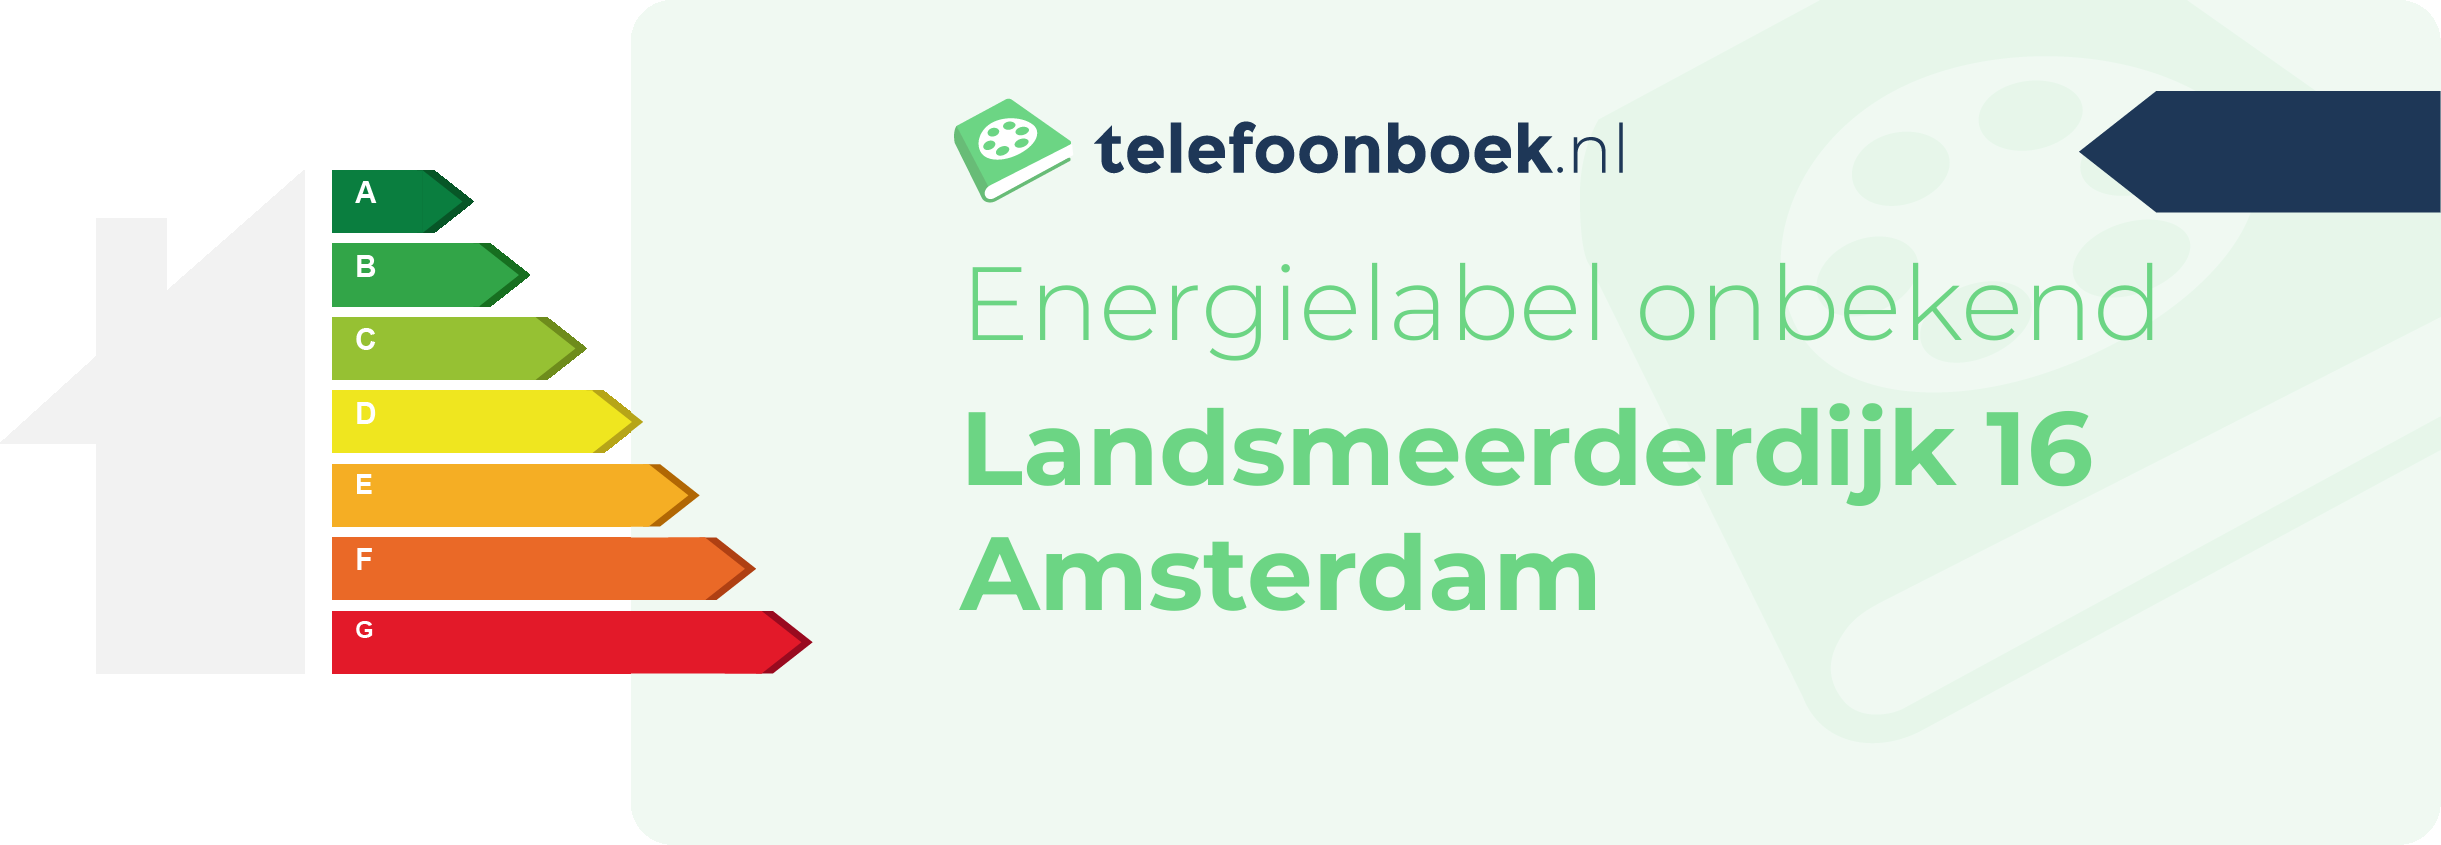 Energielabel Landsmeerderdijk 16 Amsterdam